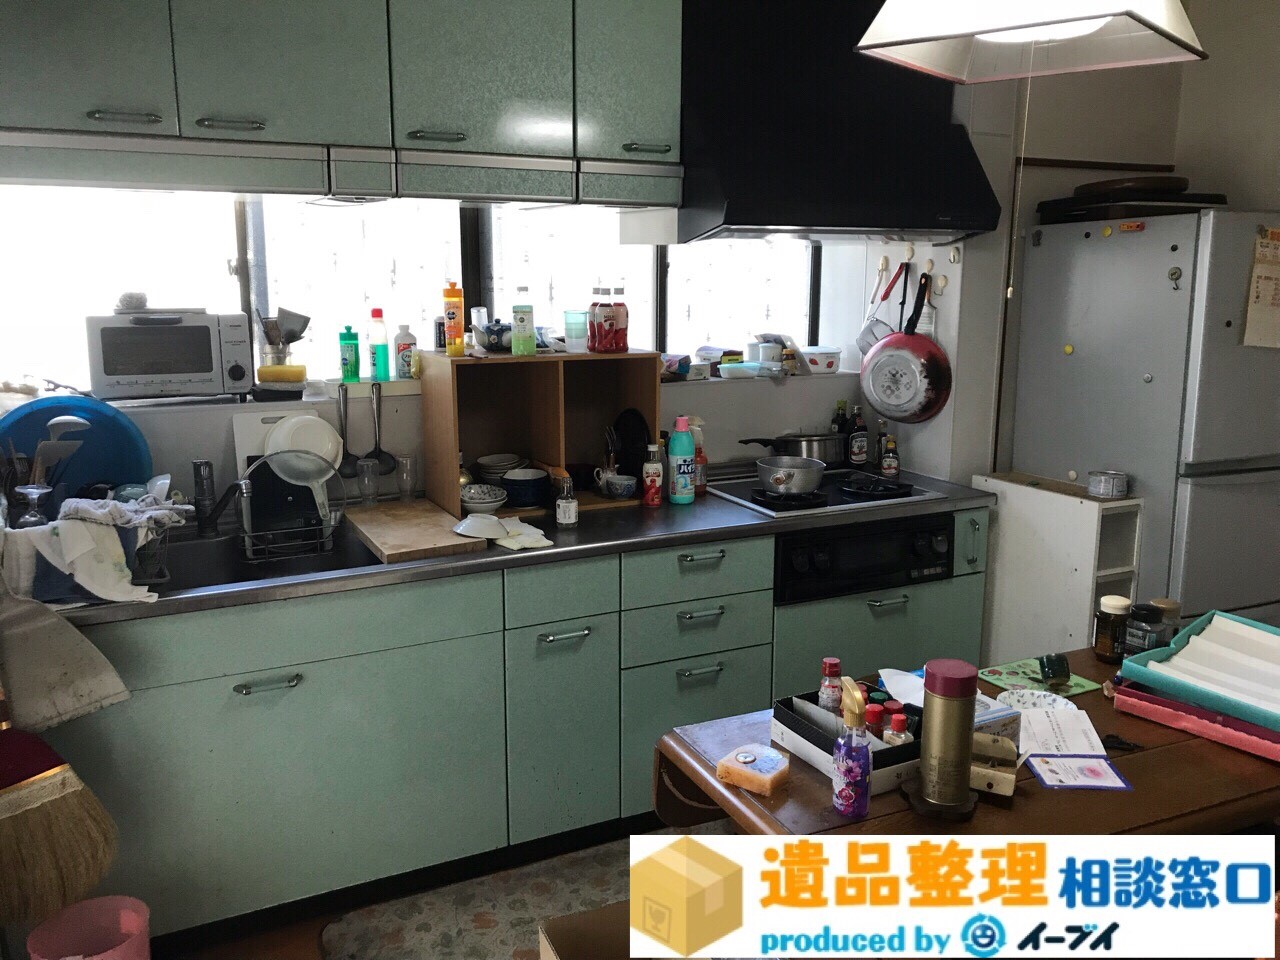 大阪府泉佐野市で遺品整理に伴いダイニングテーブルなどの家具処分をしました。のアイキャッチ